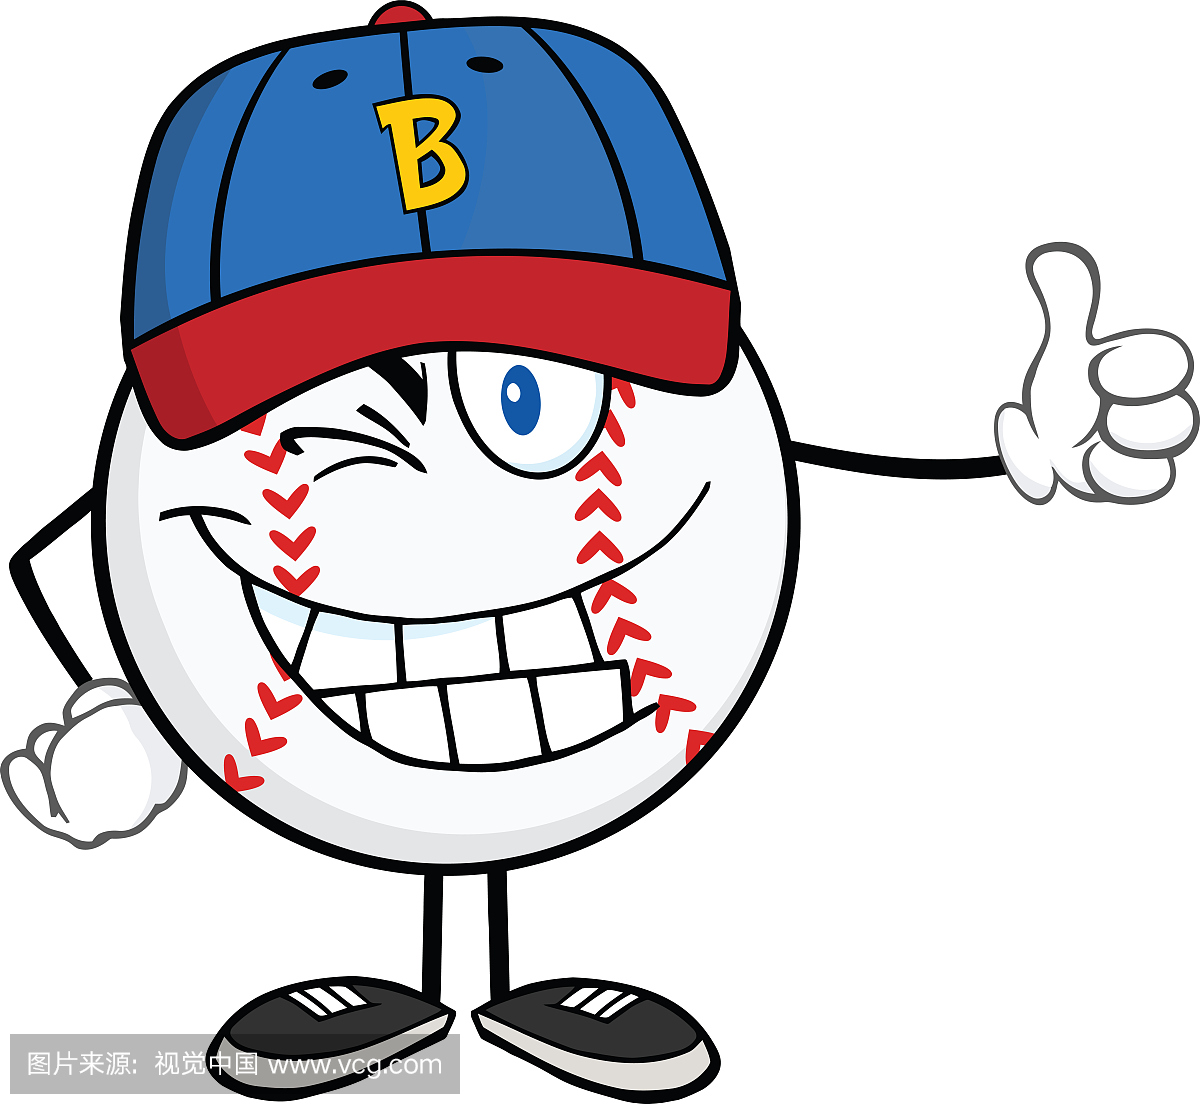 棒球帽,英文字母B,休闲游戏,运动